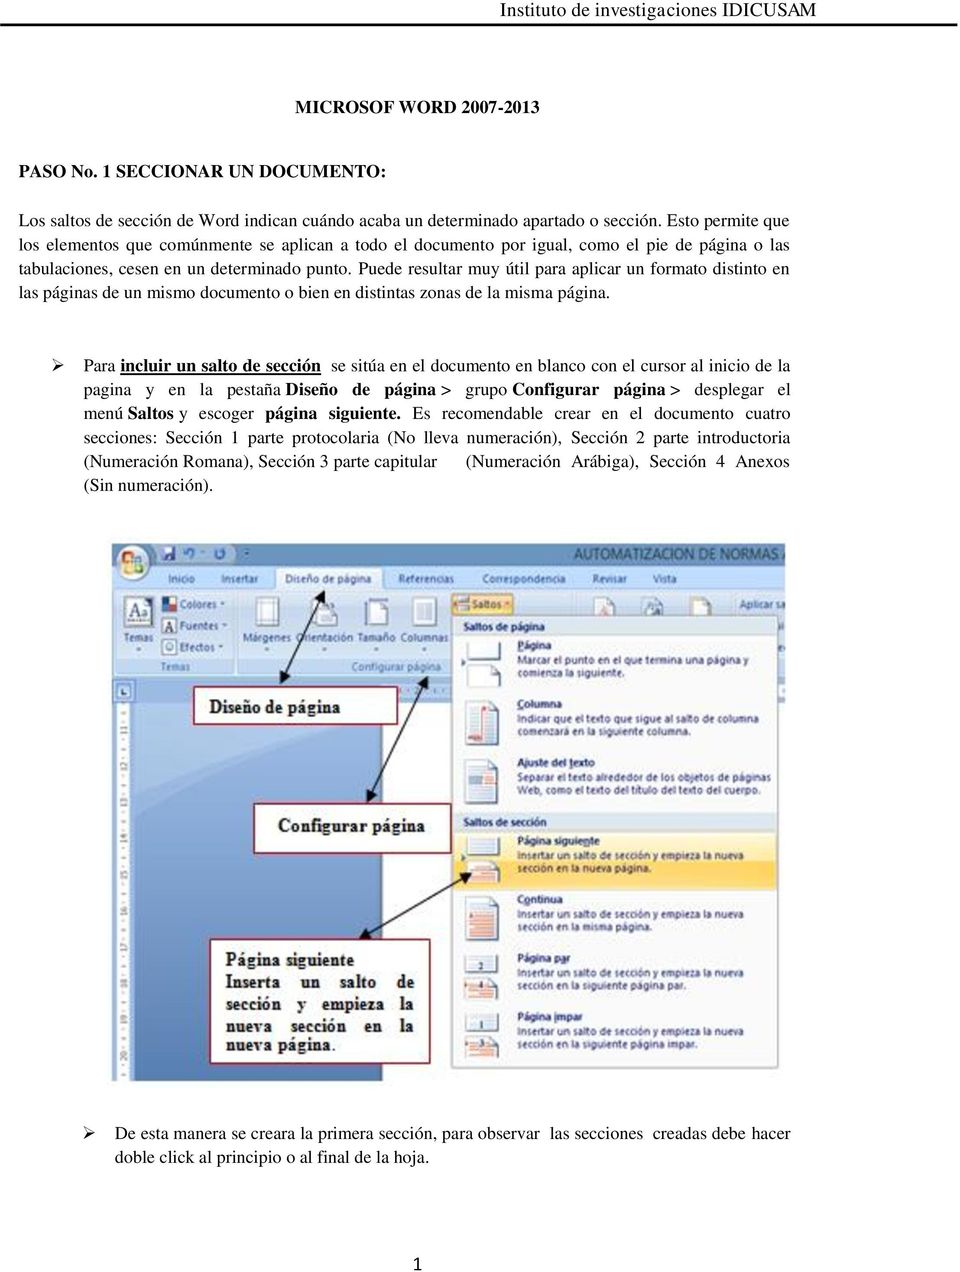 Puede resultar muy útil para aplicar un formato distinto en las páginas de un mismo documento o bien en distintas zonas de la misma página.